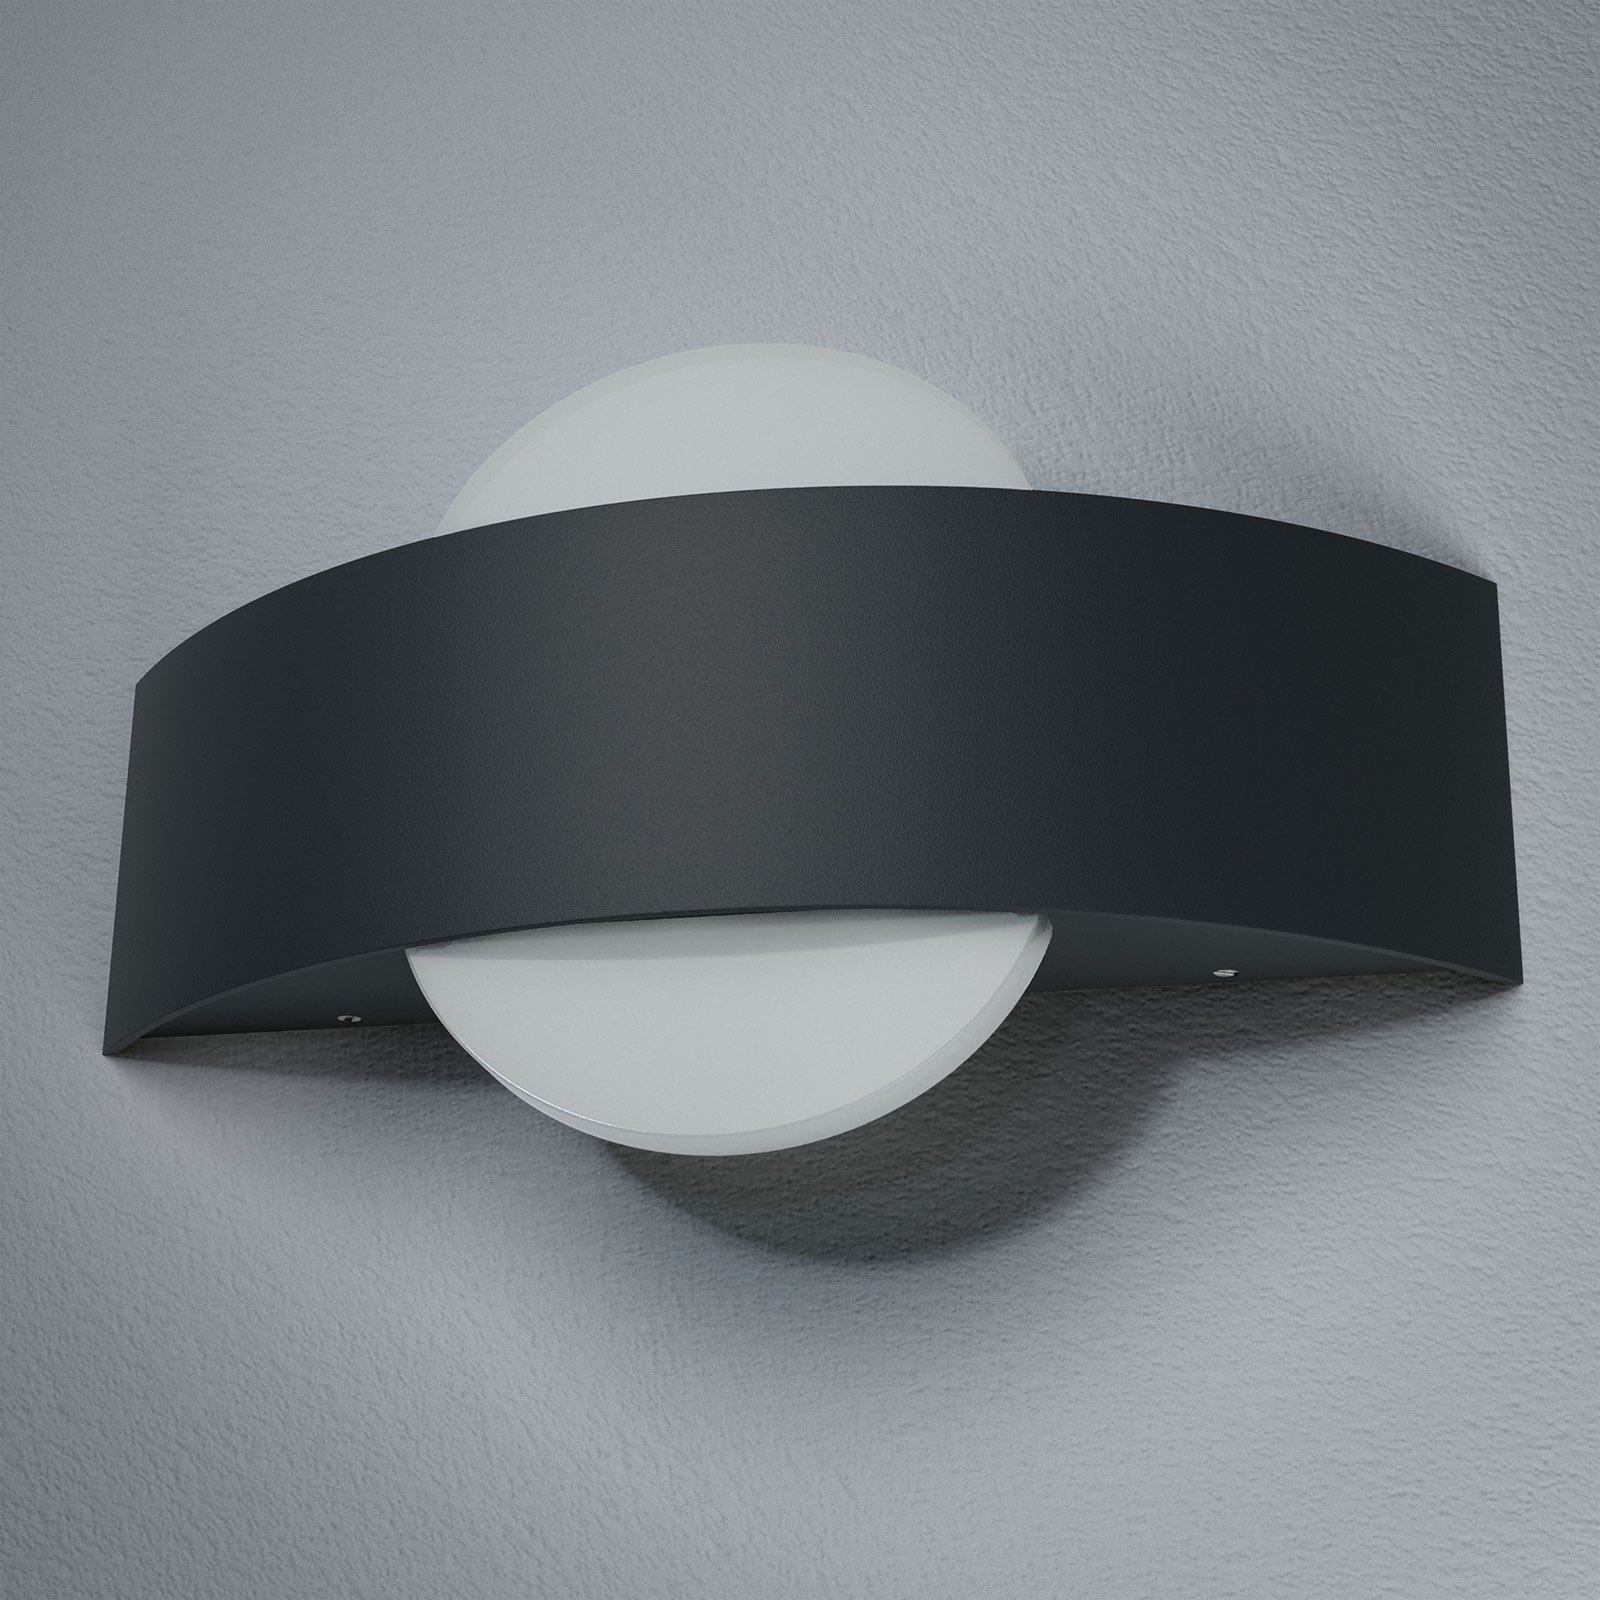 LEDVANCE Endura Style Shield Round venkovní světlo